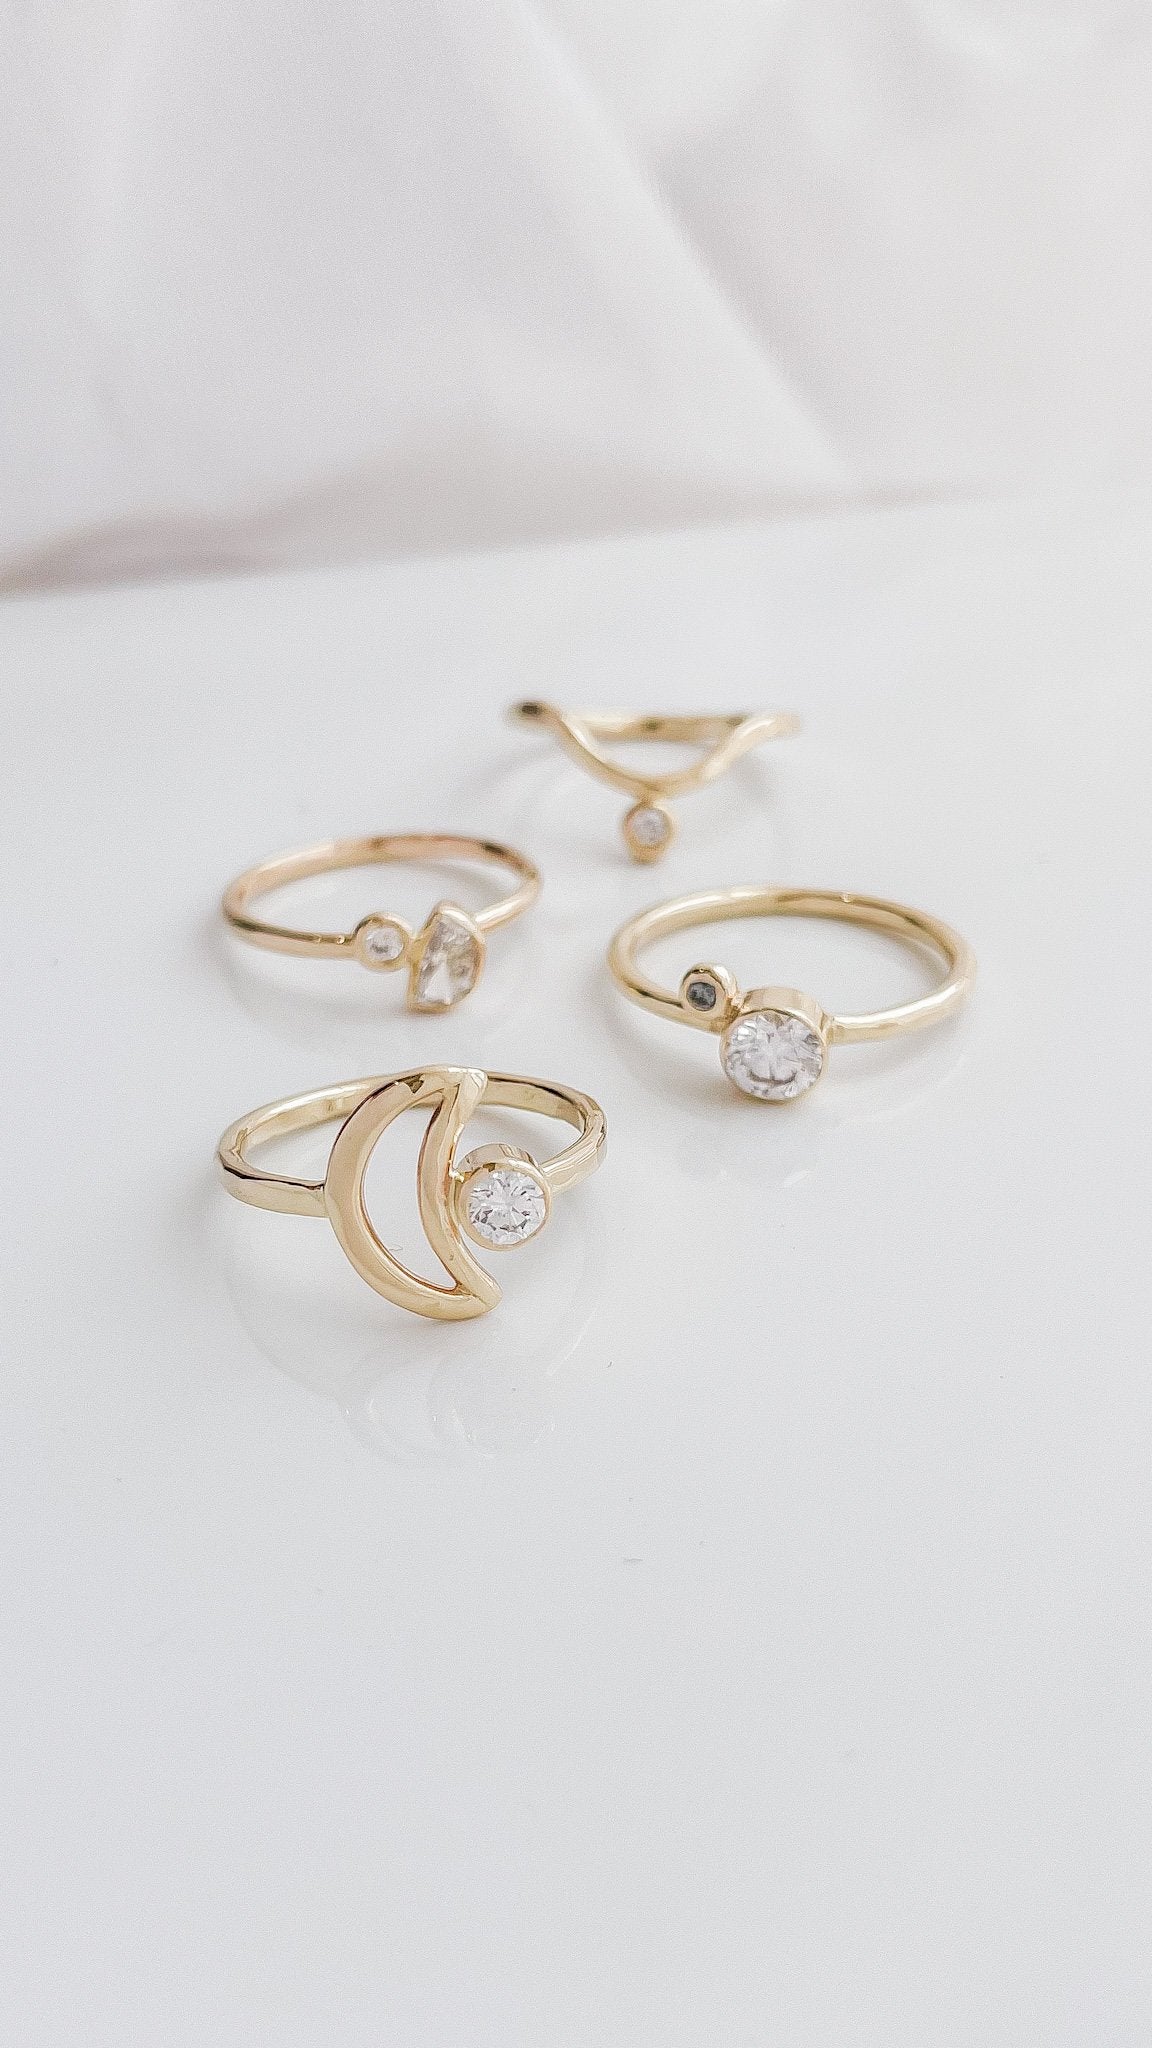 SUN & SELENE handcrafted engagement rings